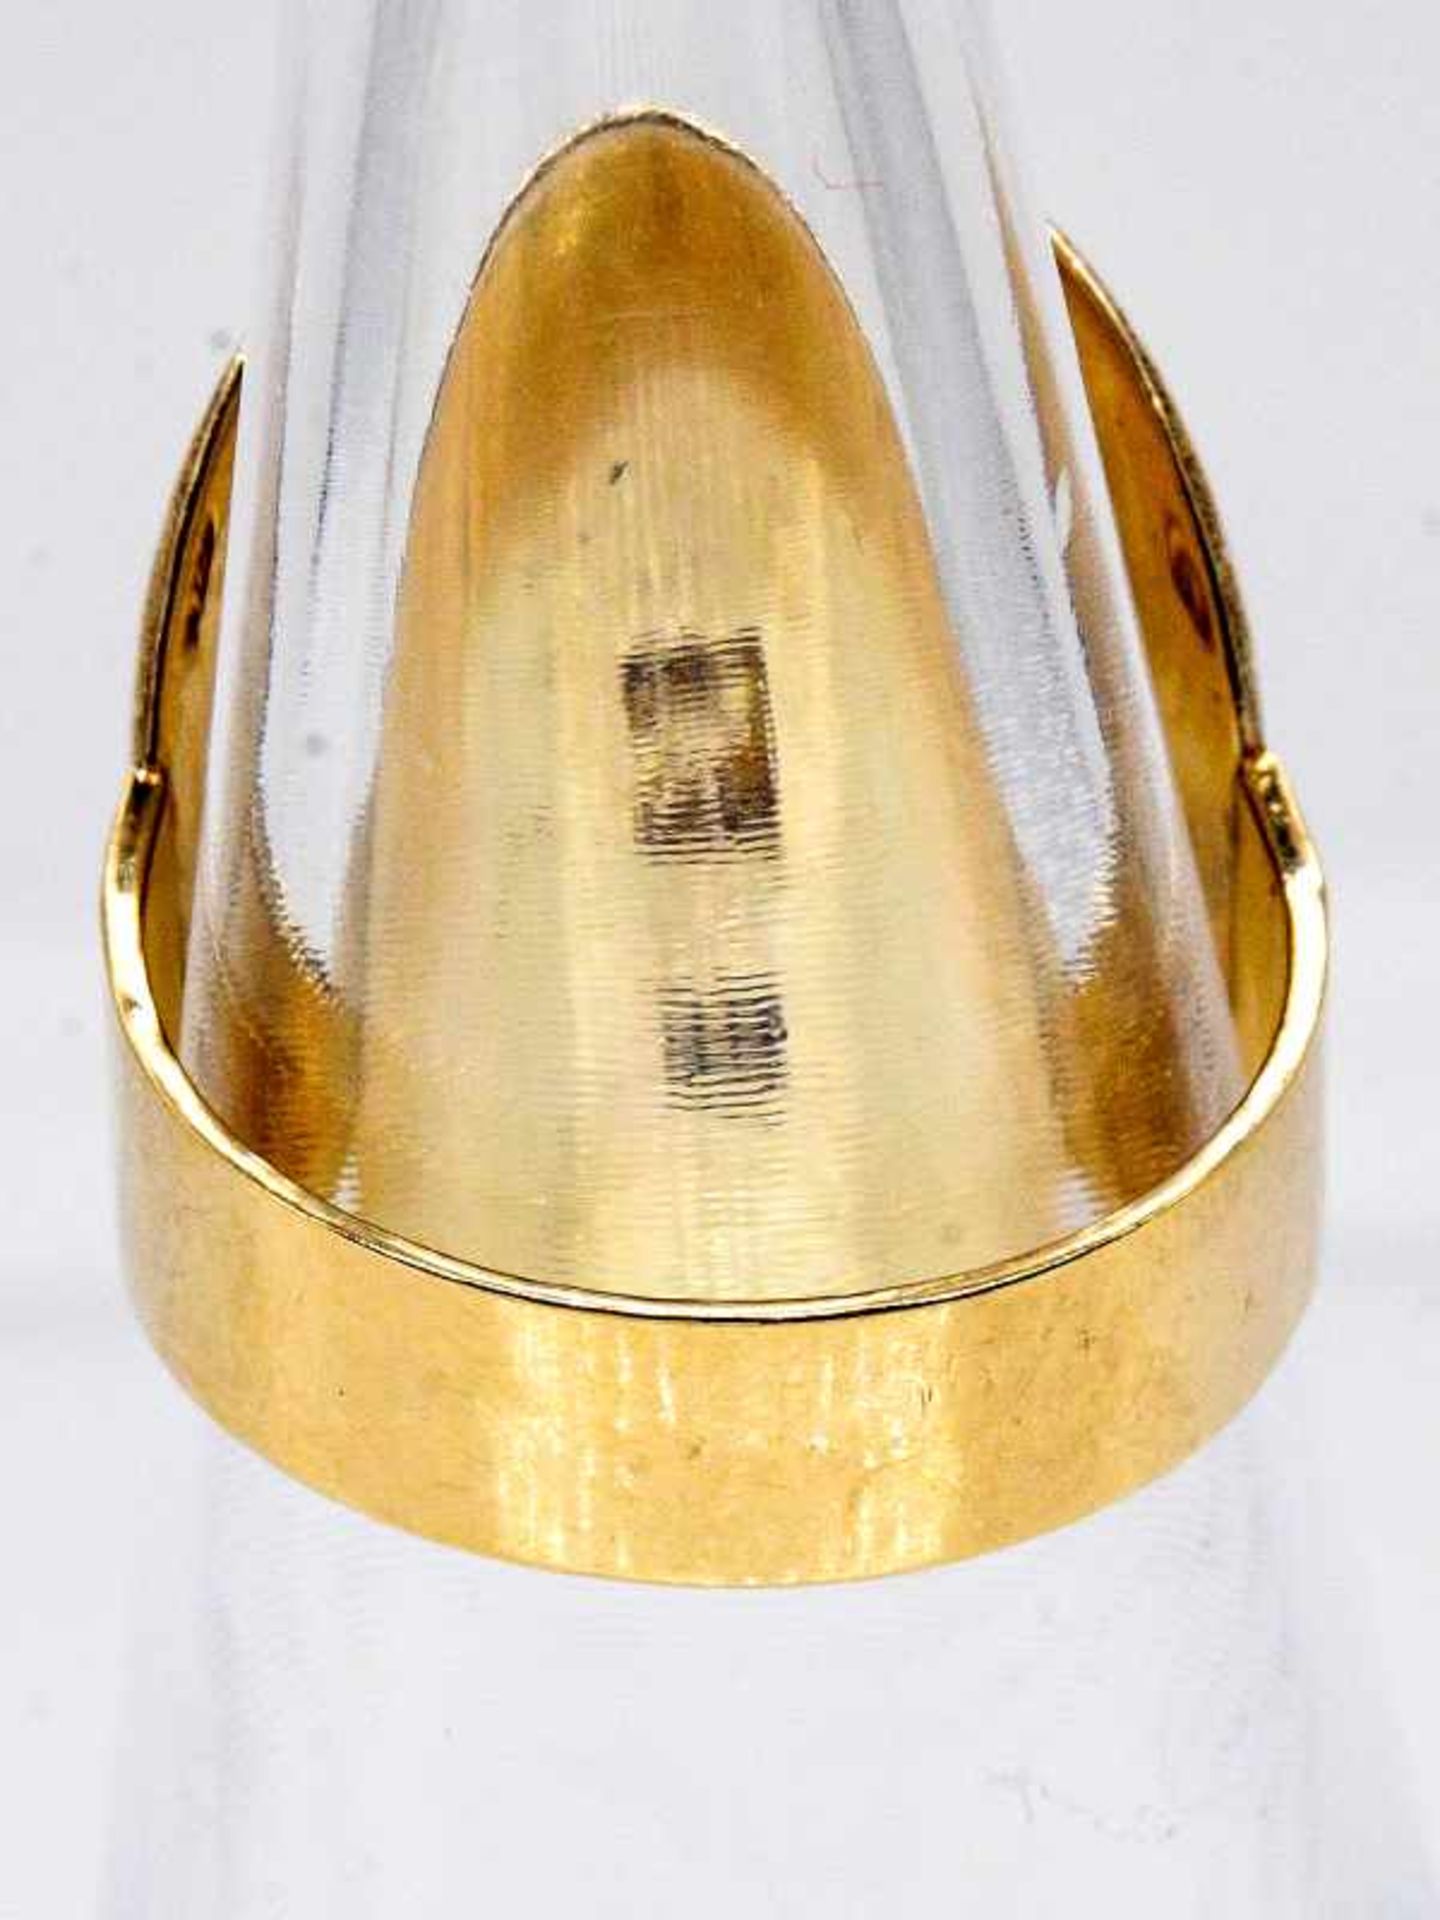 Ring mit Smaragd-Cabochon, Goldschmiedearbeit, 20. Jh. 585/- Gelbgold. Gesamtgewicht ca. 10,1 g. - Bild 6 aus 6